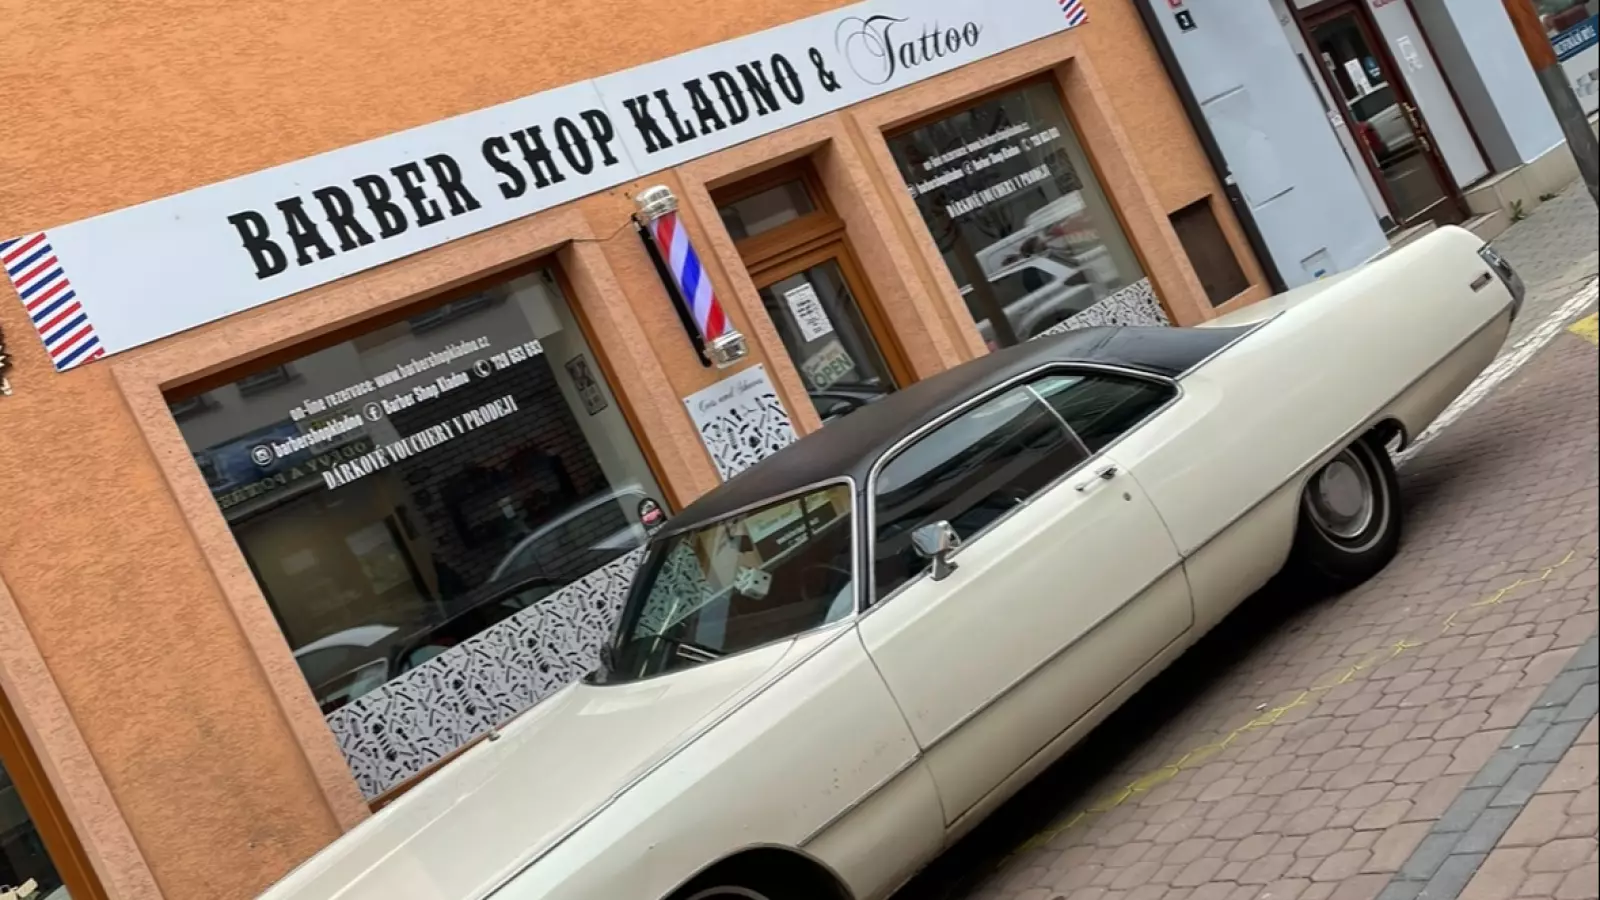 Barber Shop Kladno (Centrum)